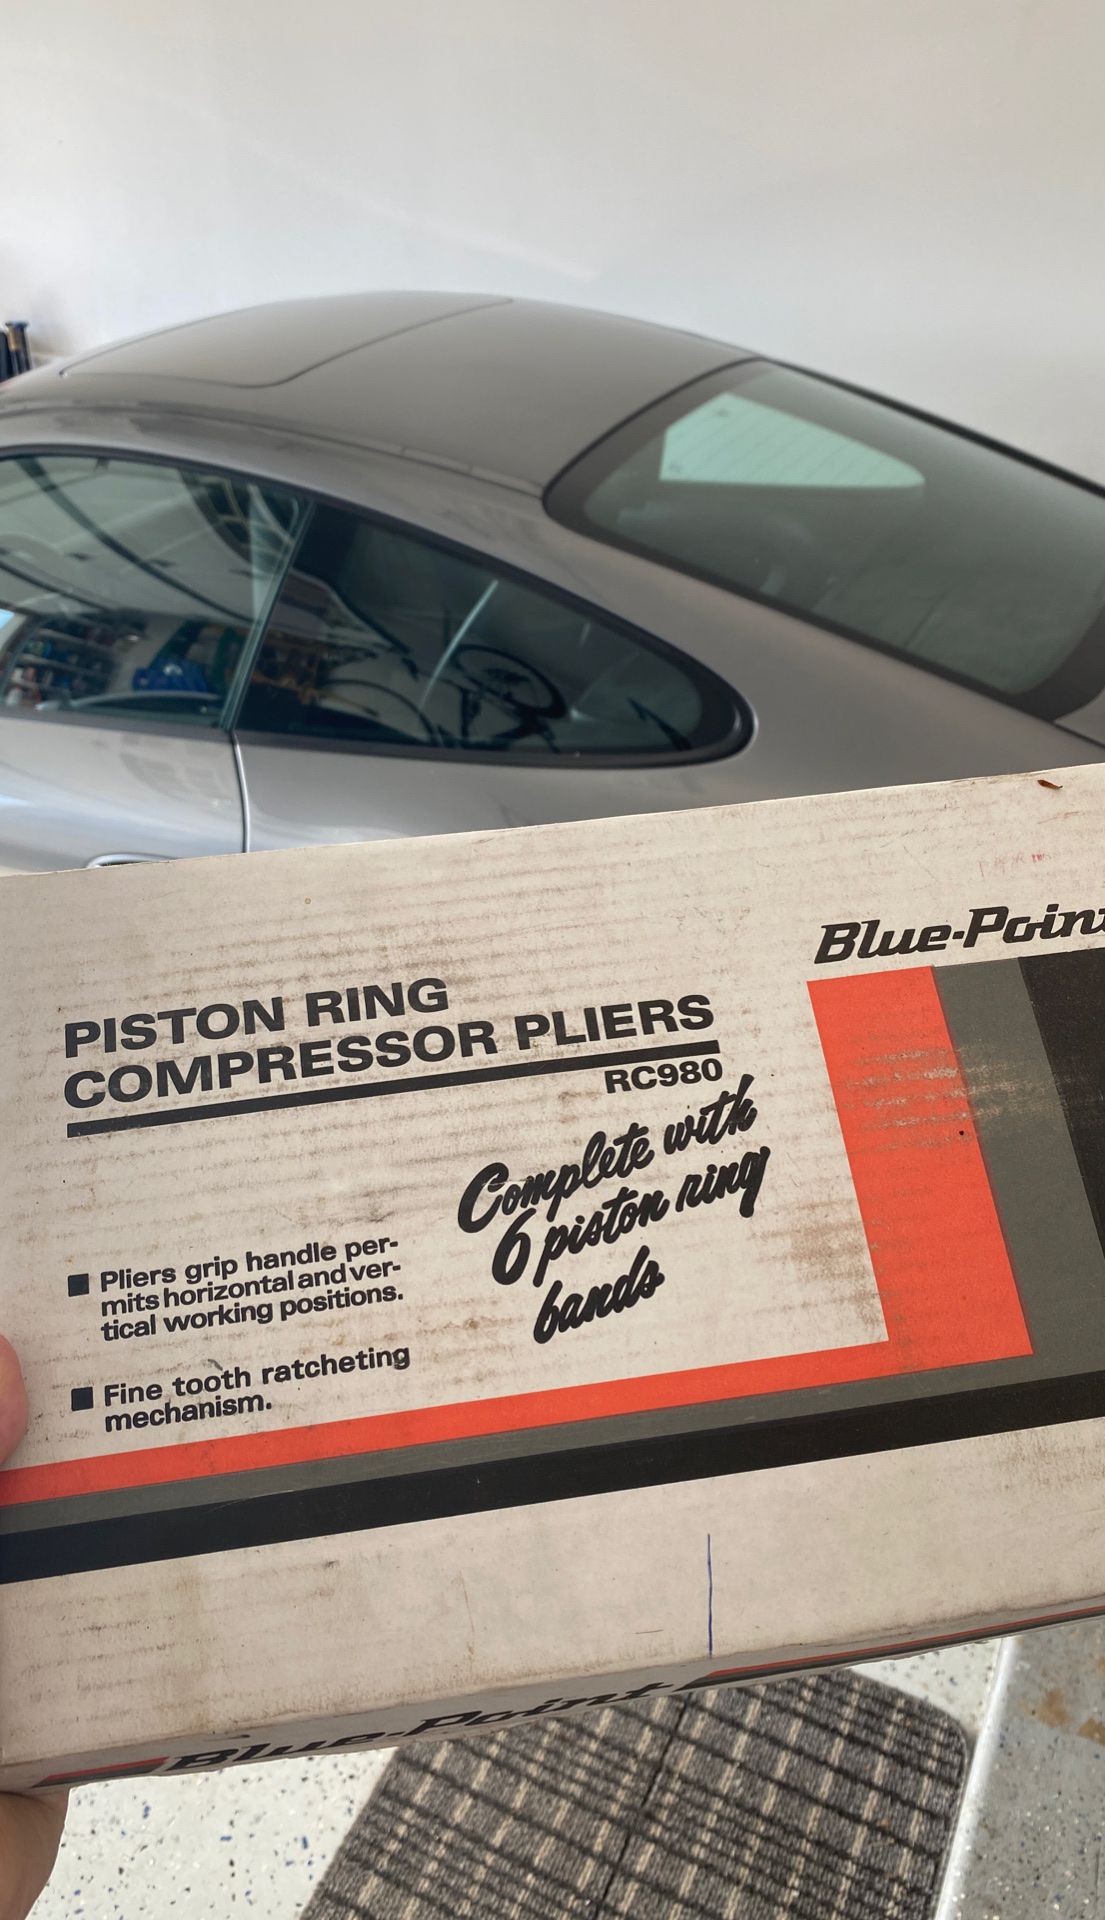 Piston ring compressor pliers